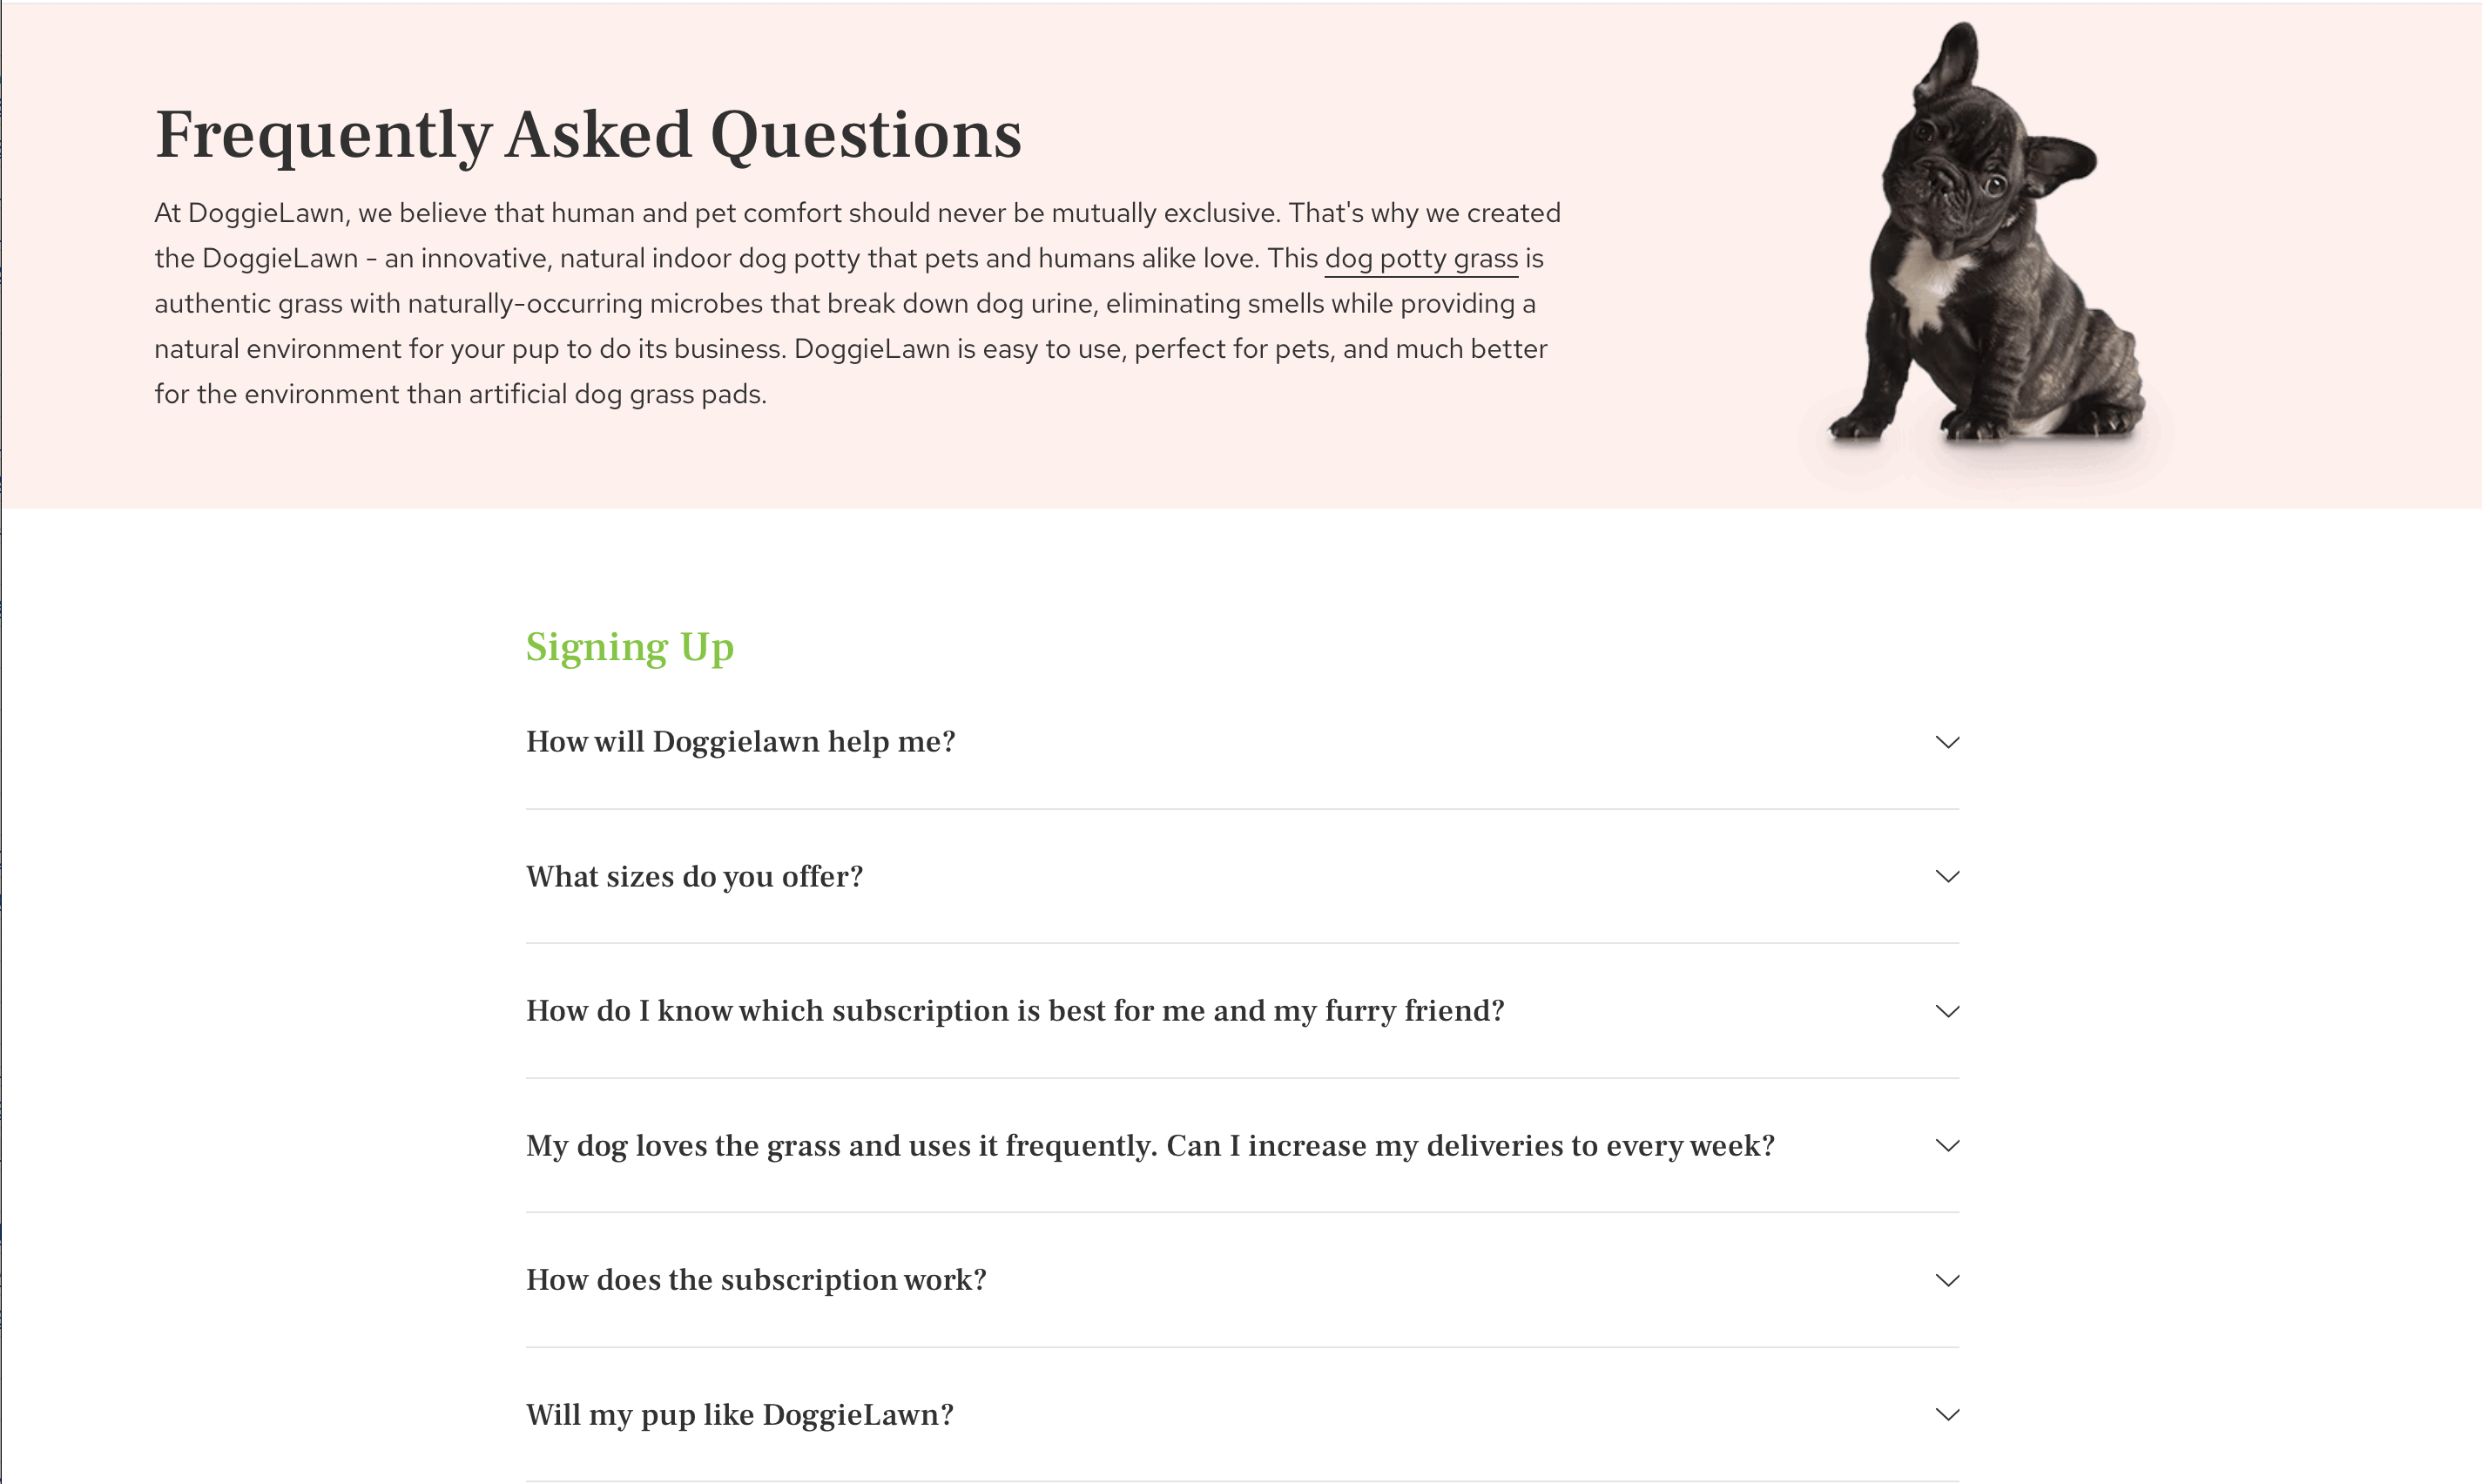 DoggieLawn's FAQ Page